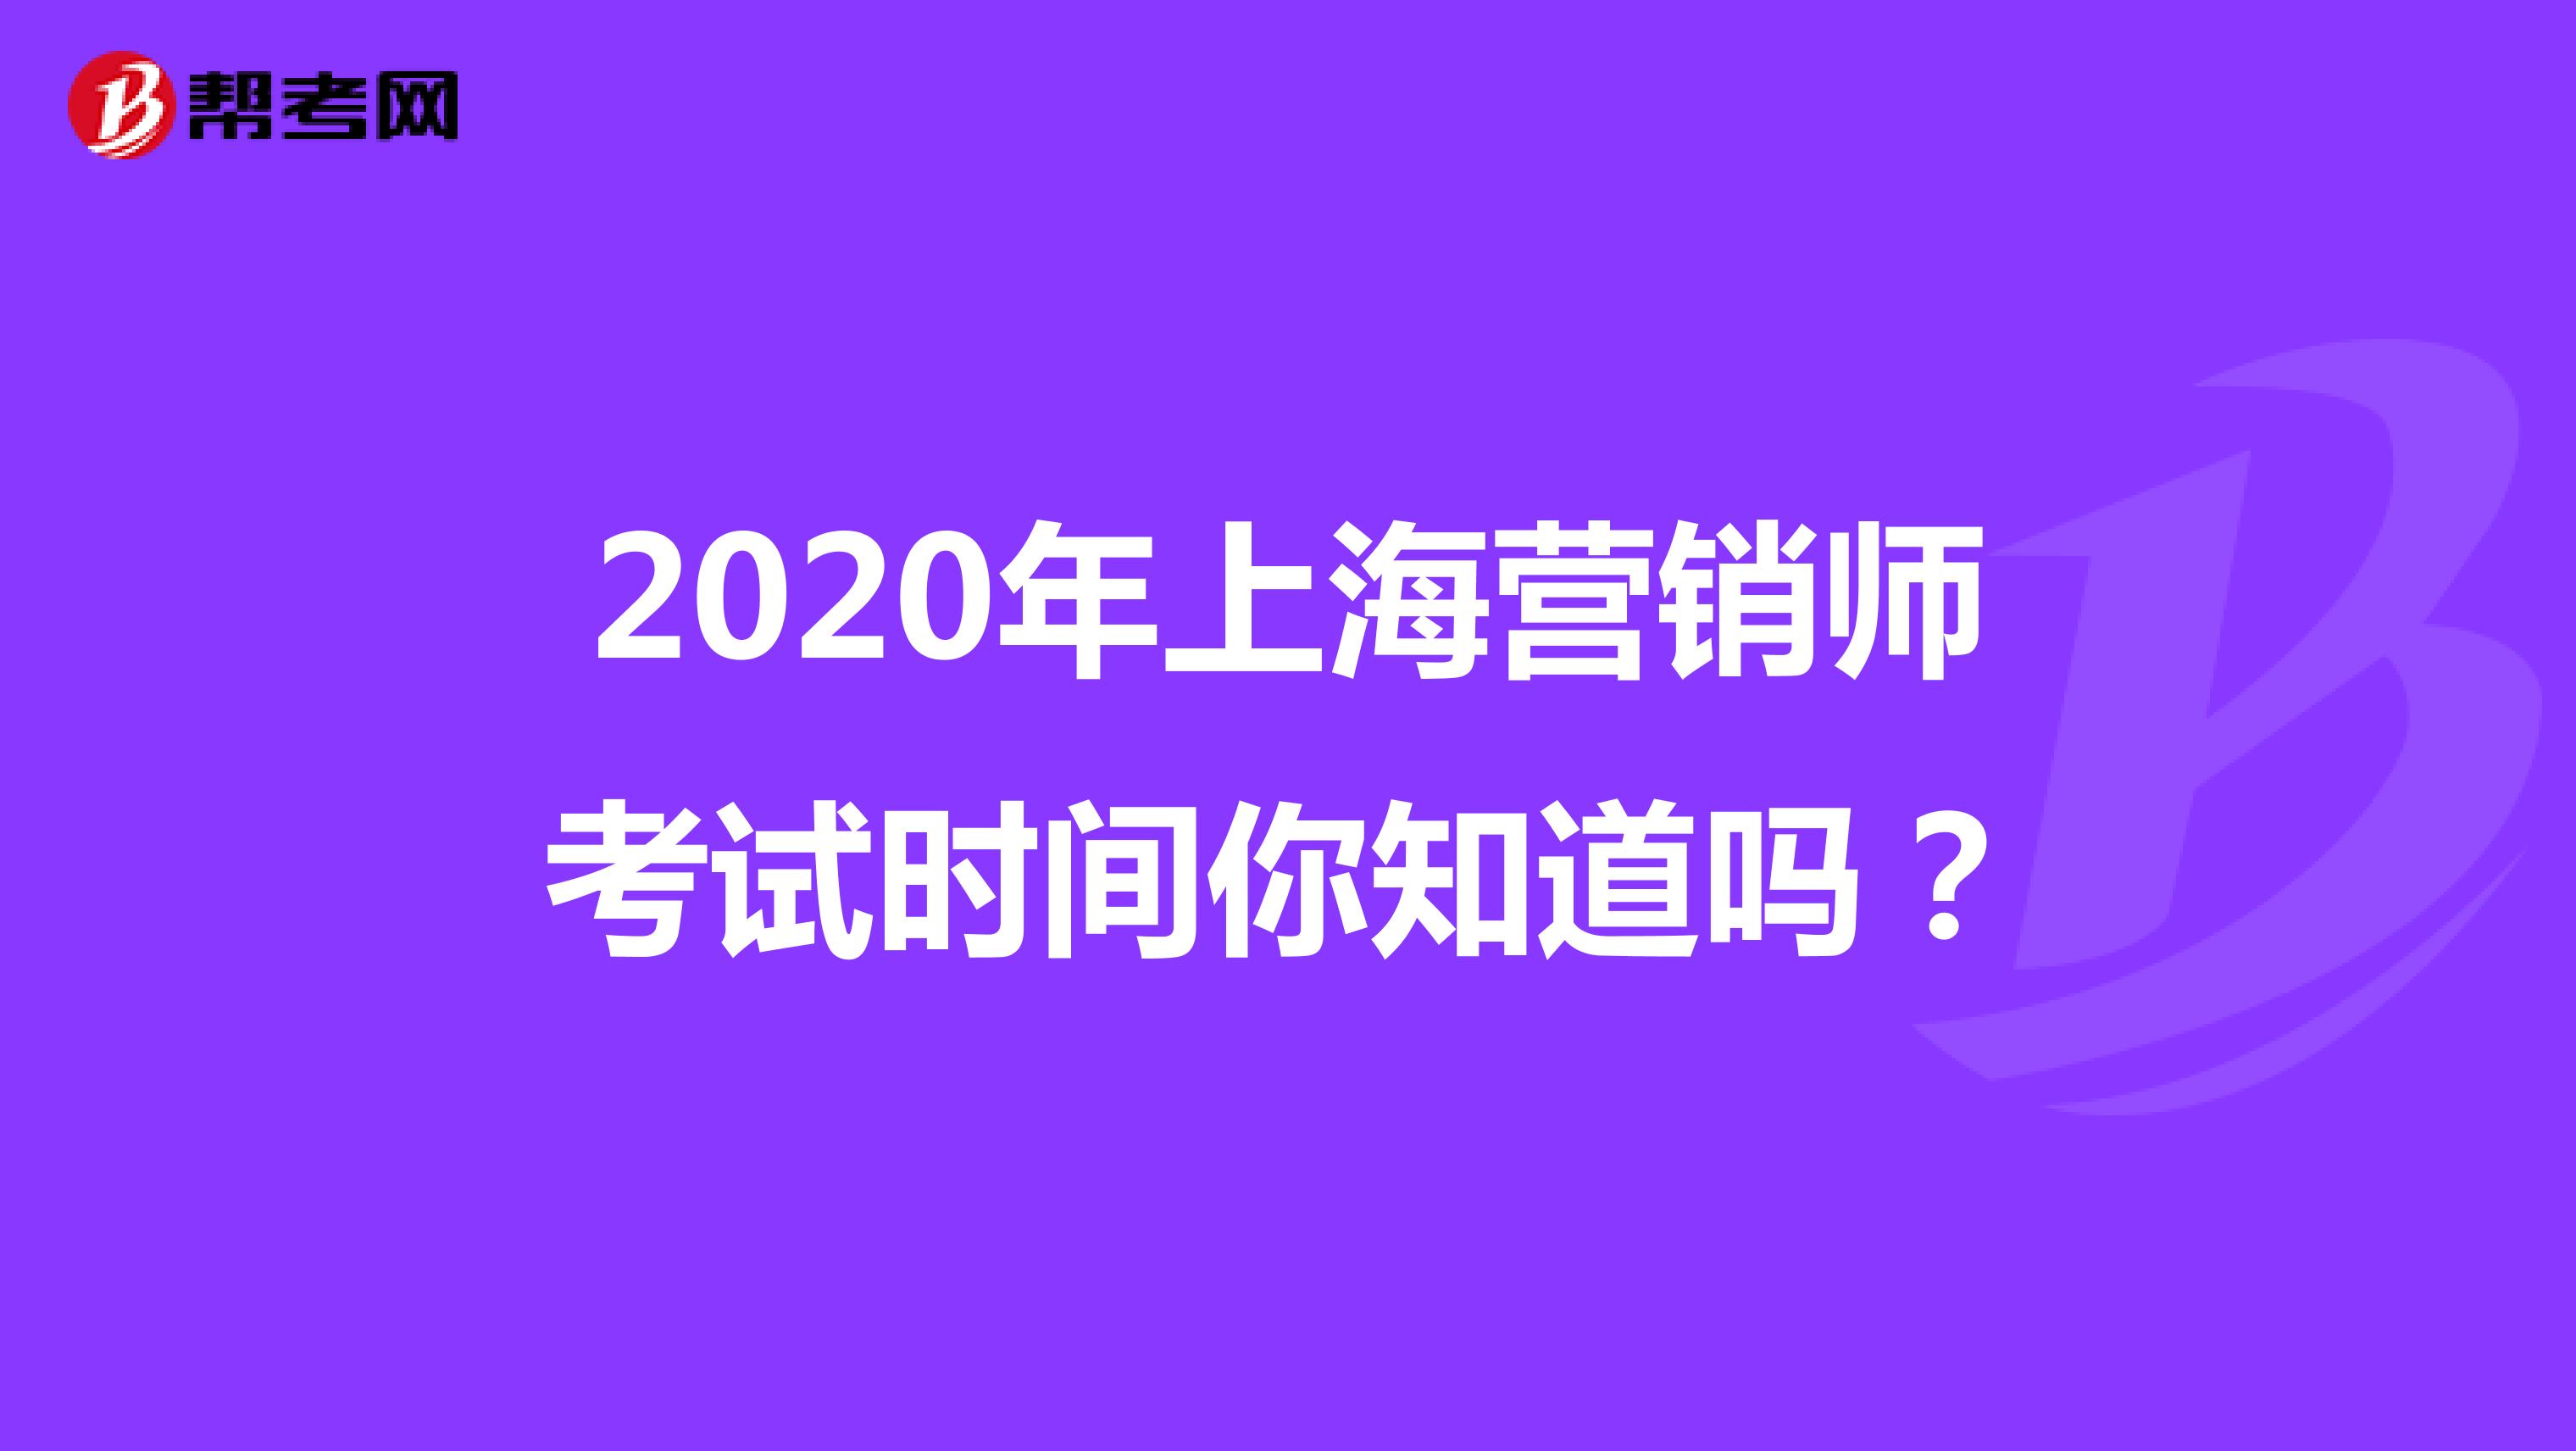 2020年上海营销师考试时间你知道吗？